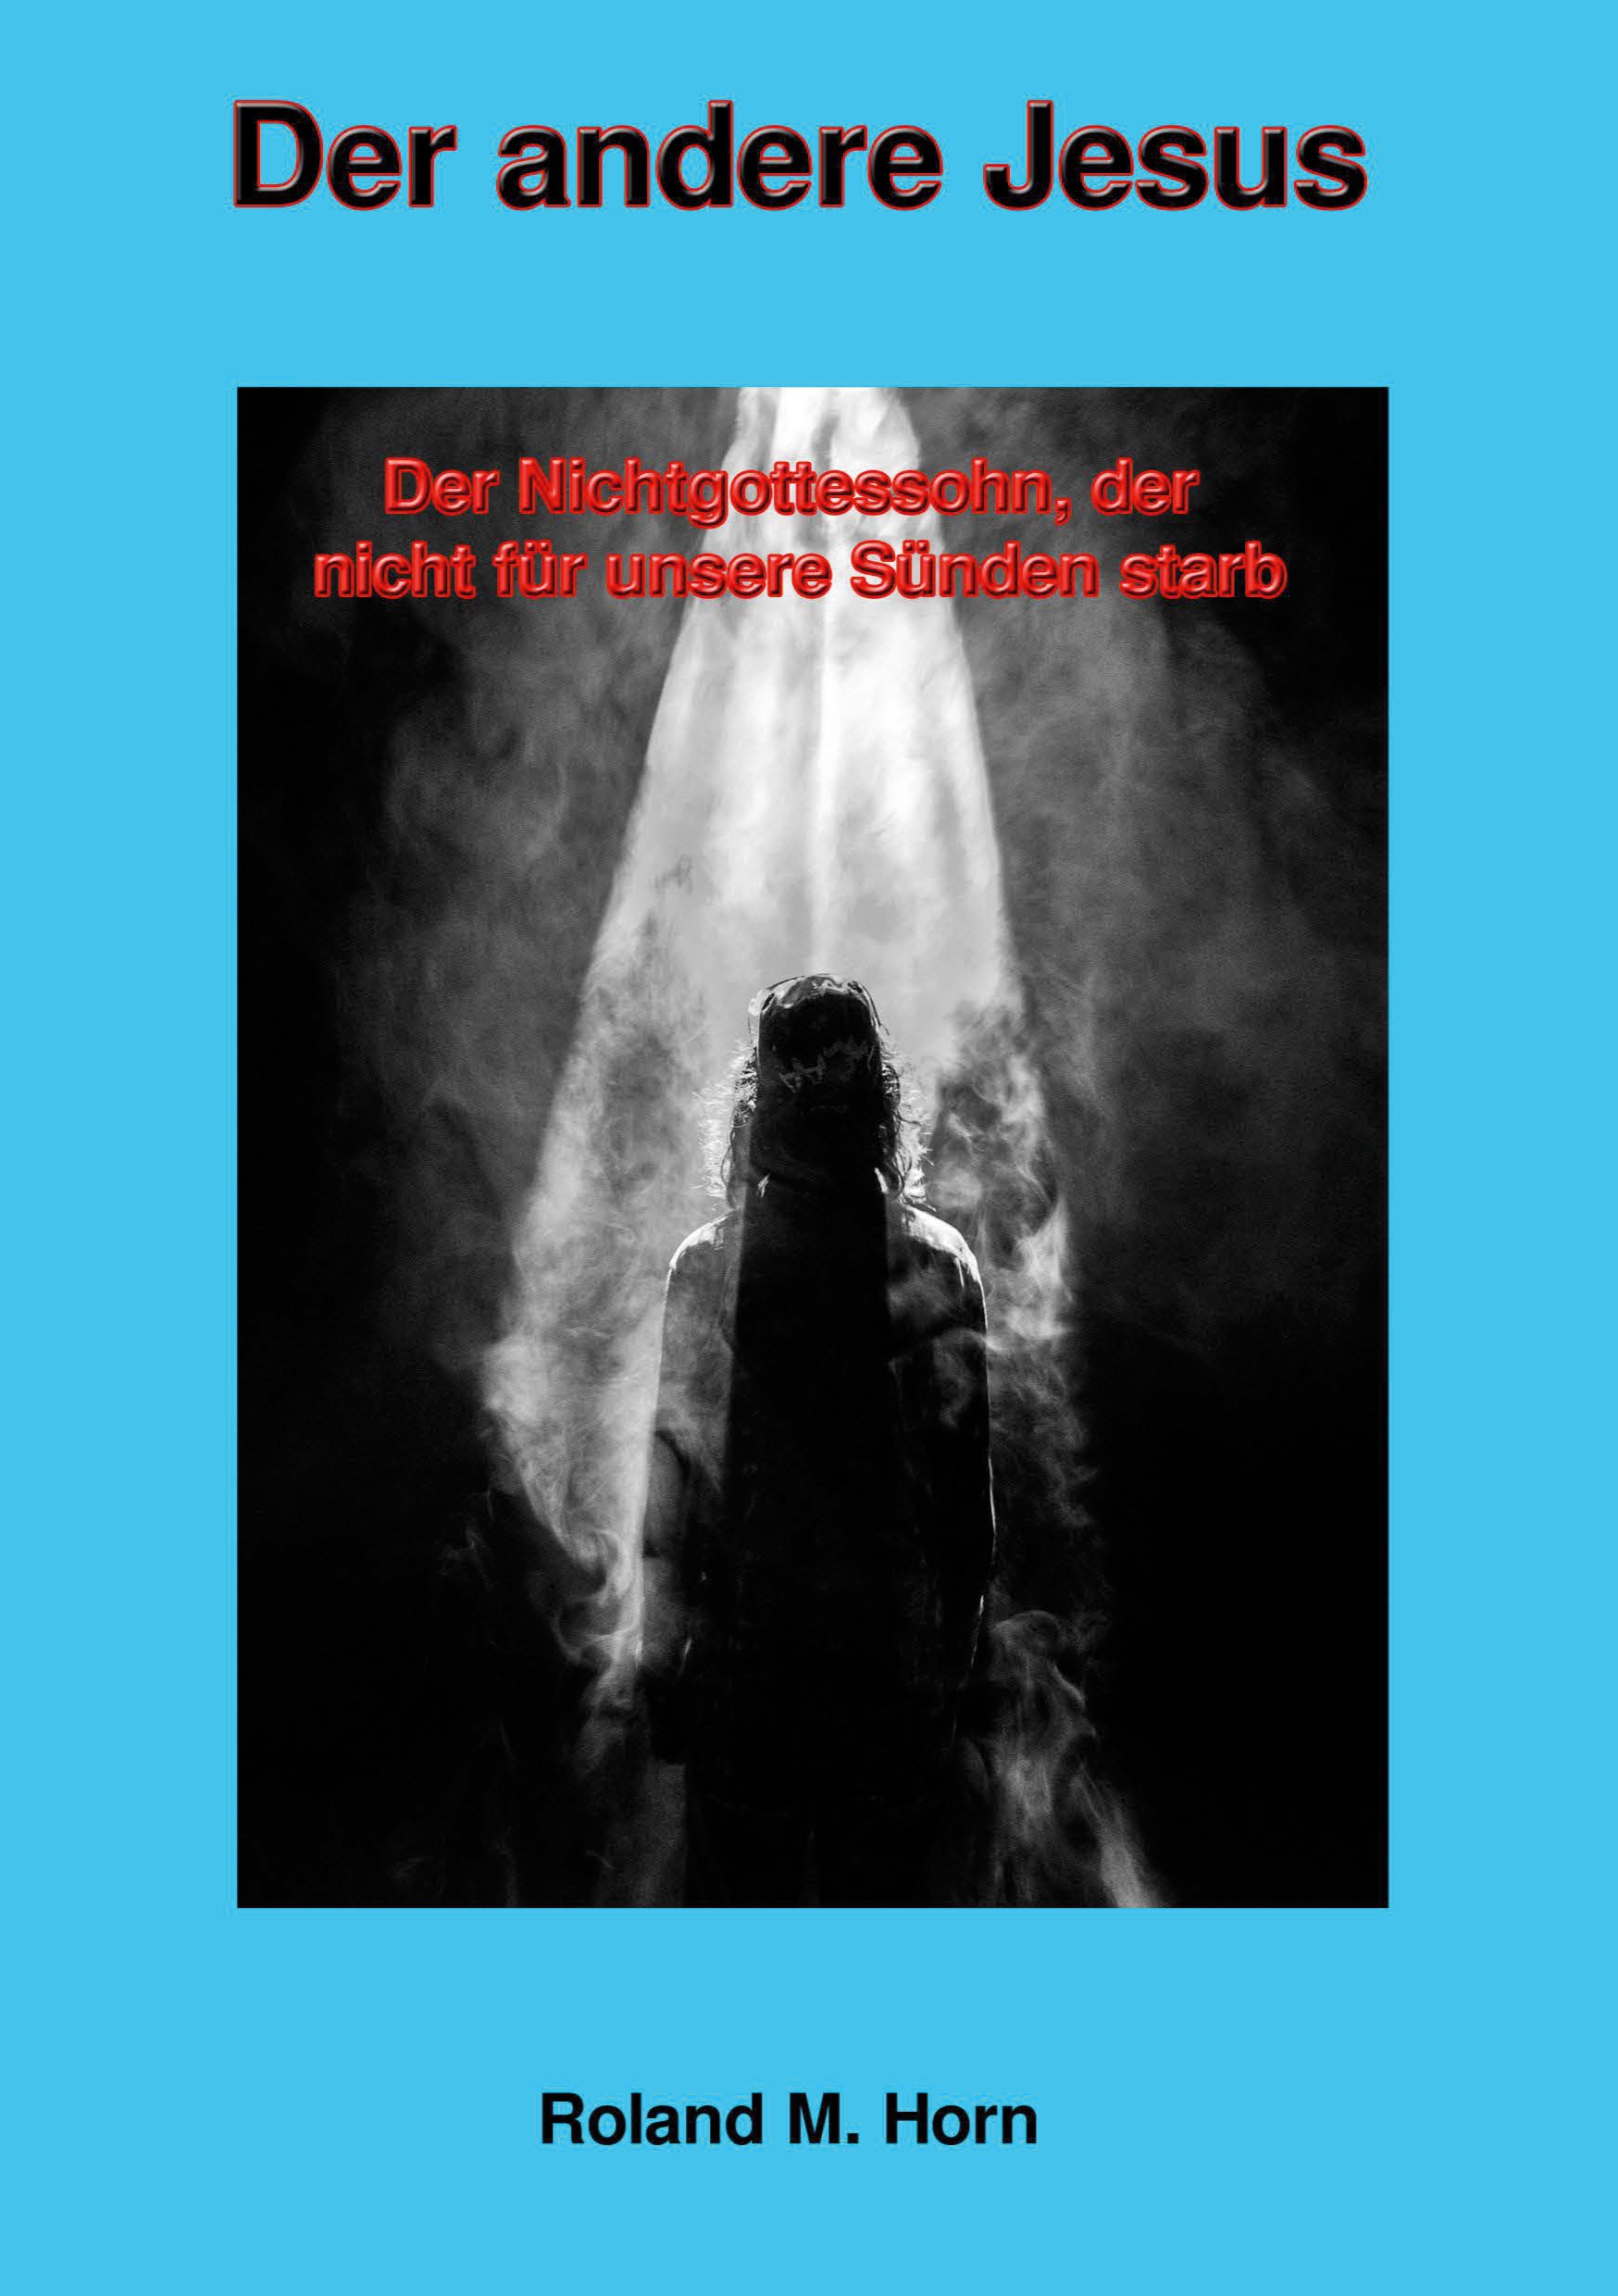 Cover: Der andere Jesus (Roland M. Horn) | Freie-Pressemitteilungen.de